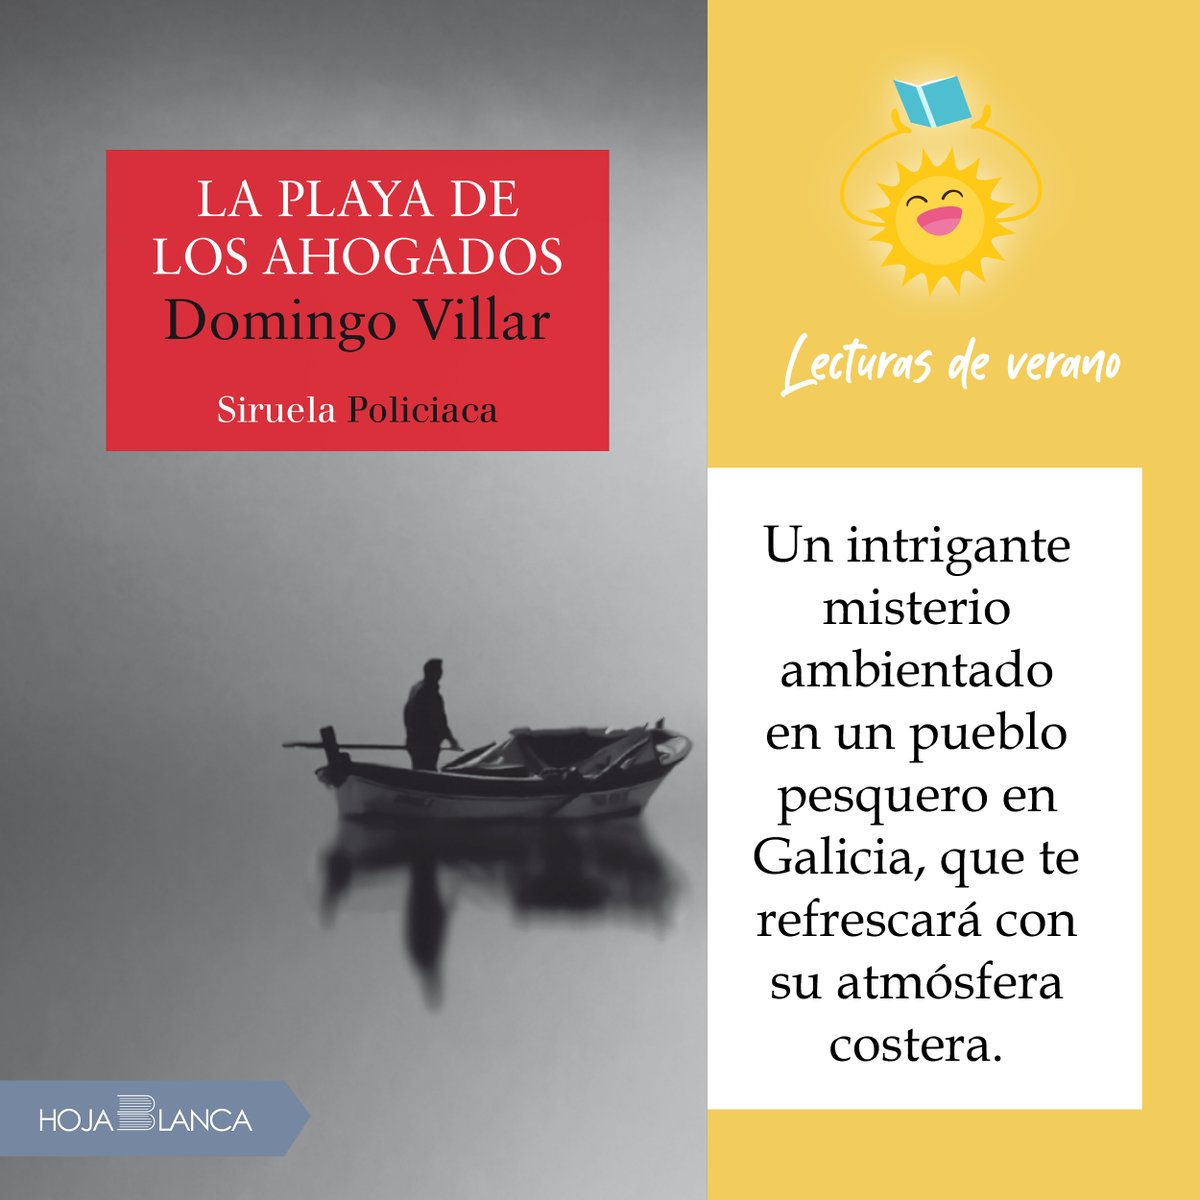 📘#Laplayadelosahogados de Domingo Villar: Un intrigante misterio ambientado en un pueblo pesquero en Galicia, que te refrescará con su atmósfera costera. bit.ly/43ZvzOr

#LecturasDeVerano
#LibrosParaElVerano #LibrosRefrescantes
#VacacionesYLectura
#LibrosBajoElSol